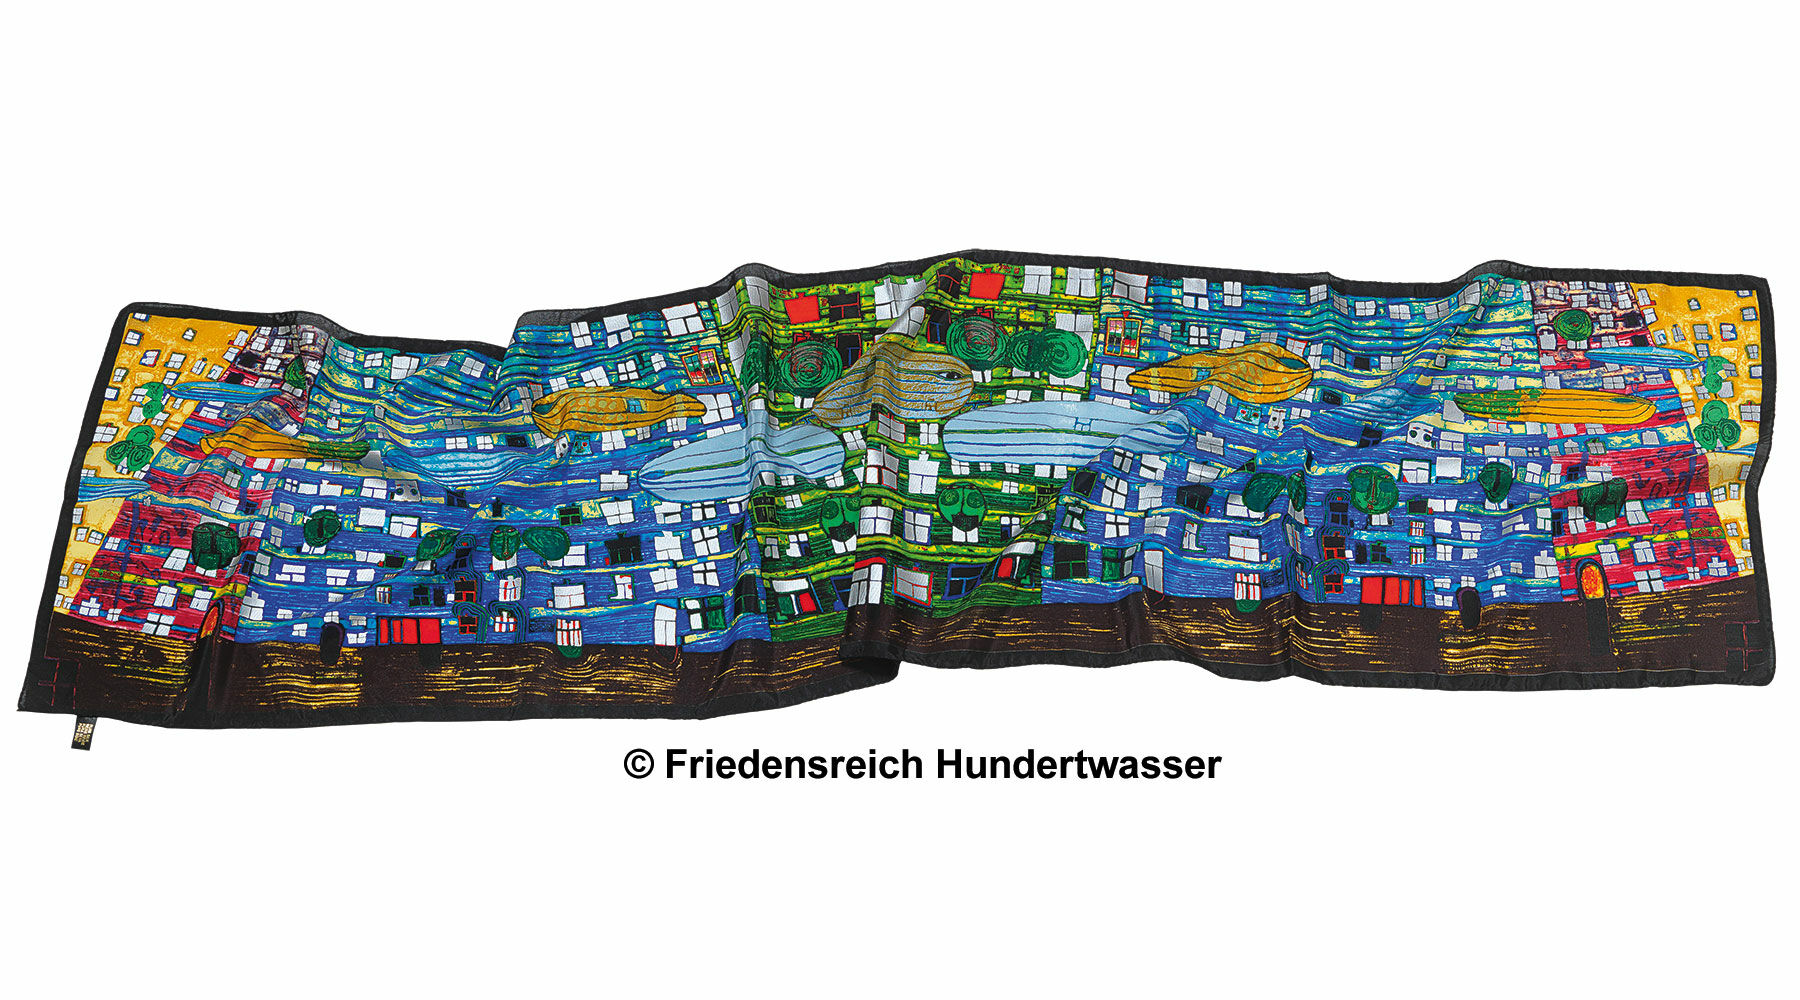 (777) Schal "Song of the Whales" von Friedensreich Hundertwasser